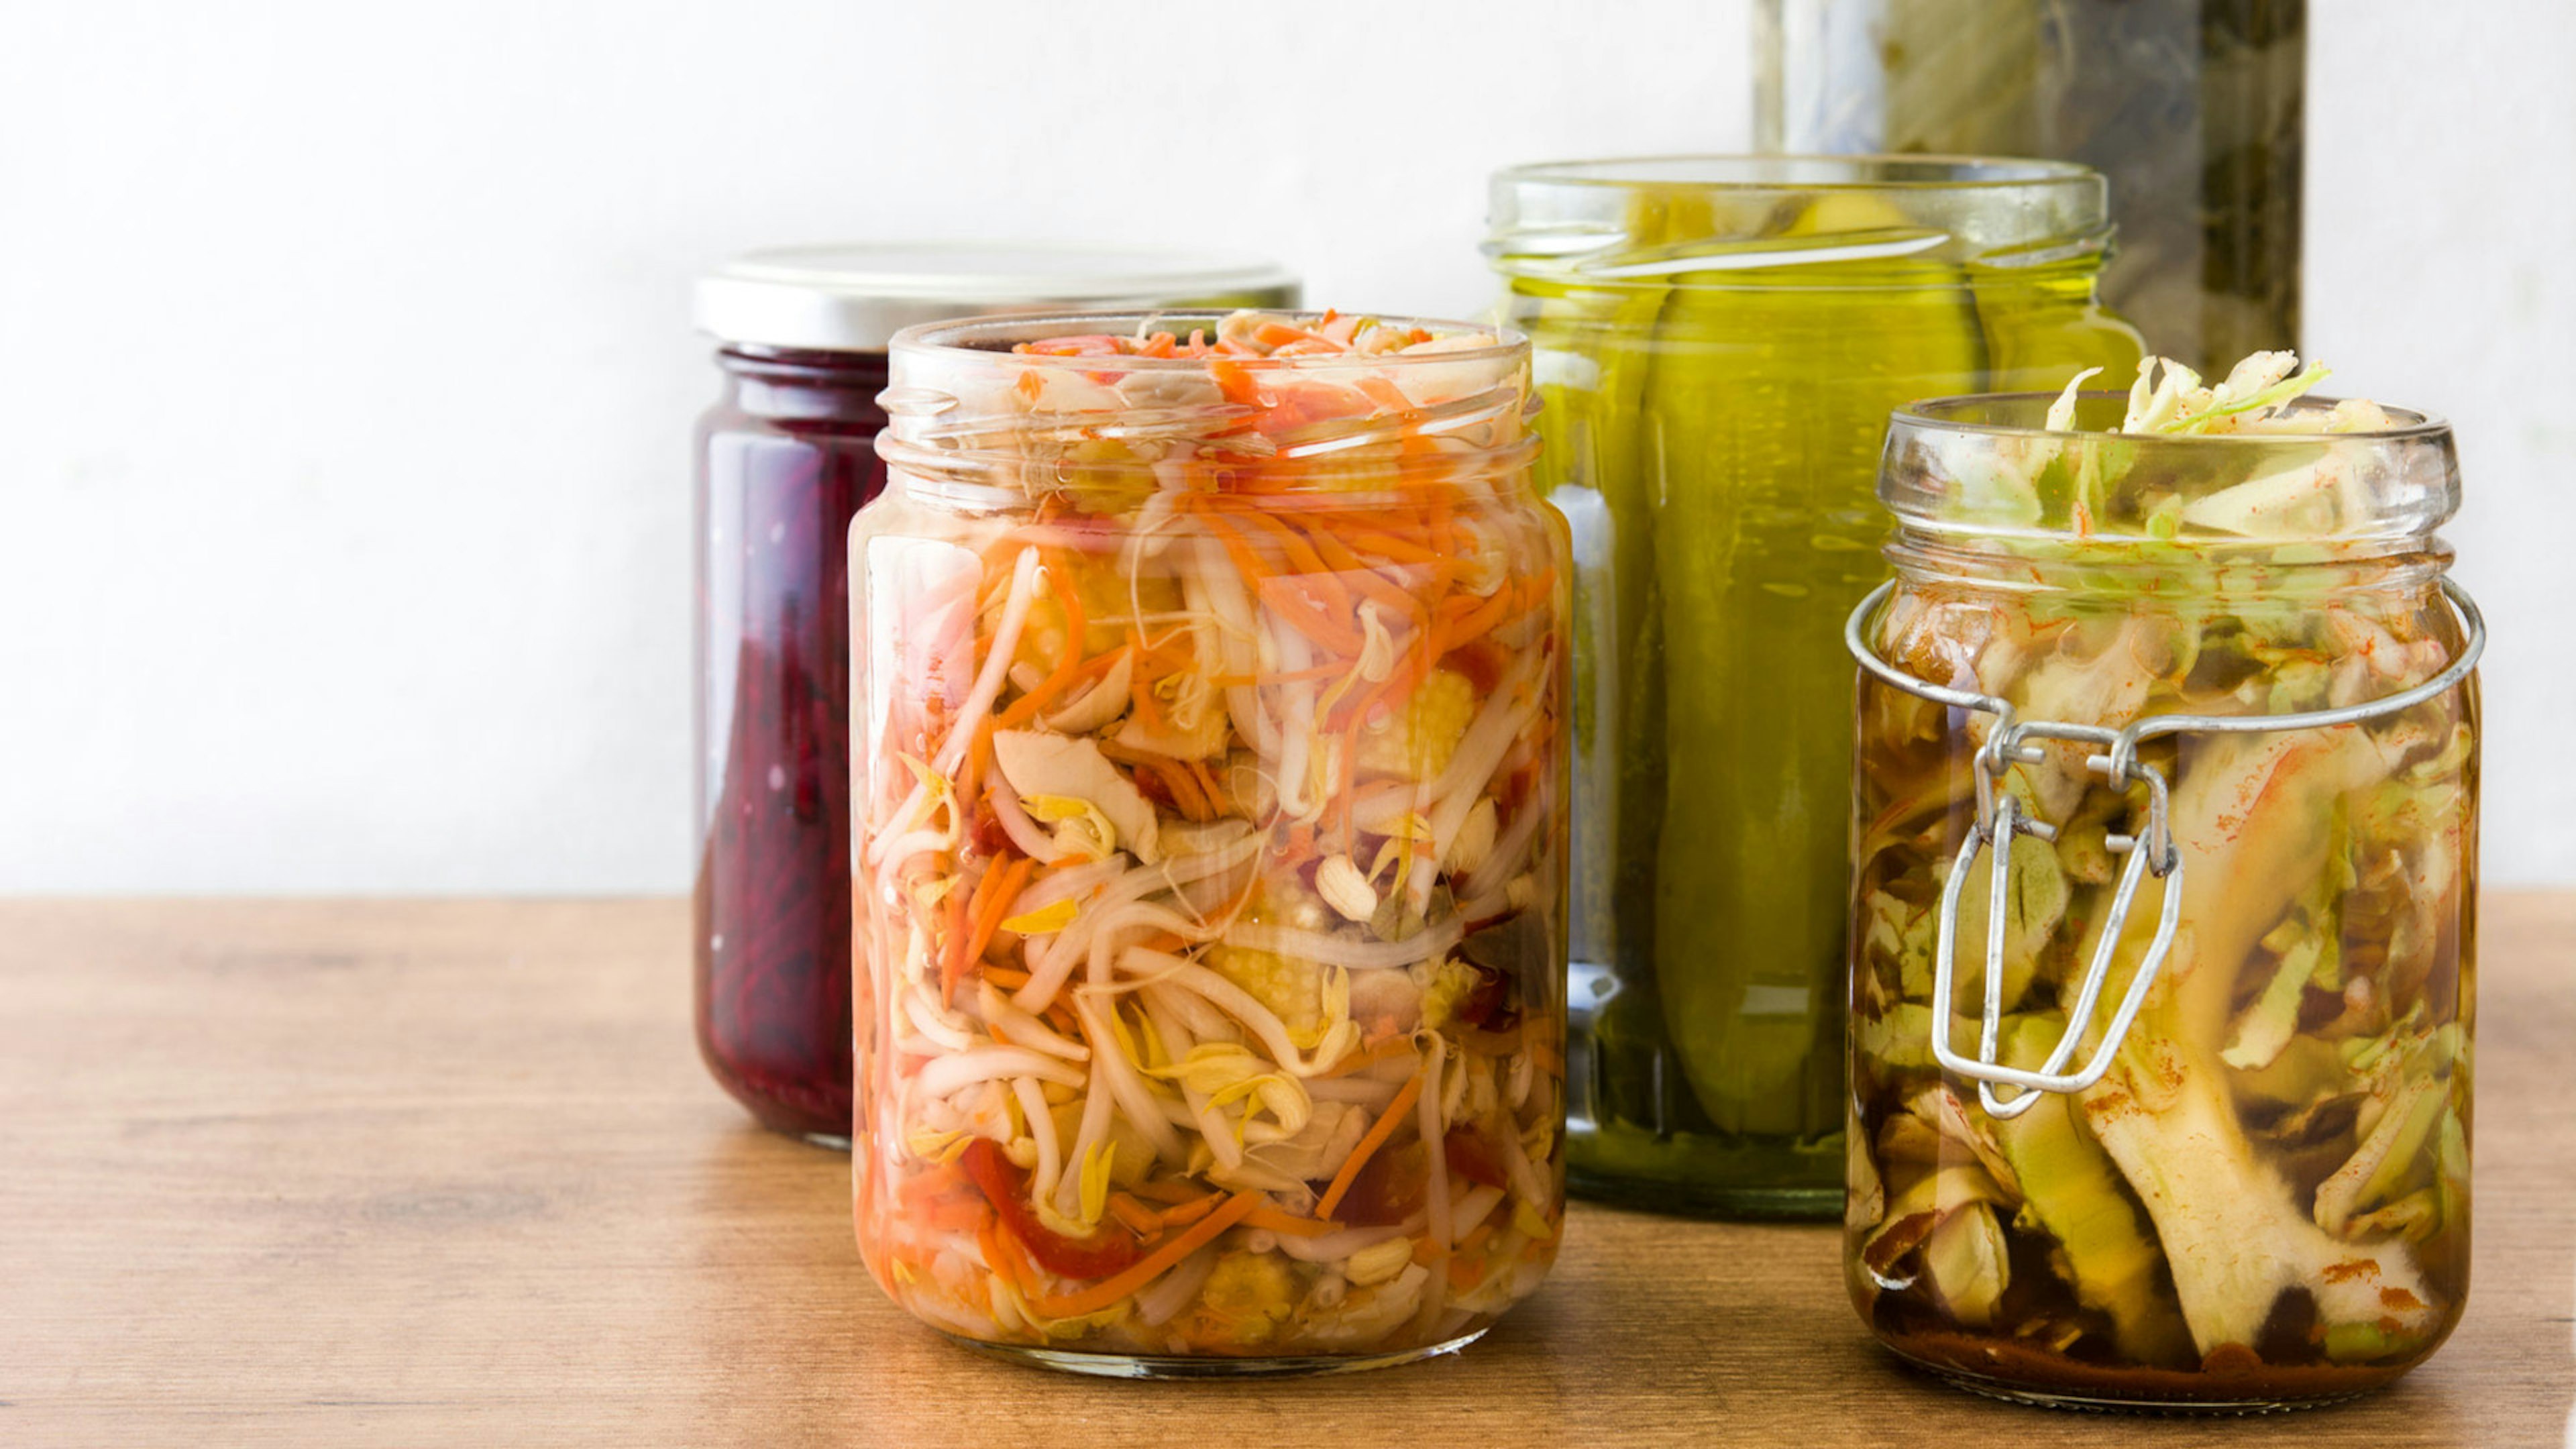 Gläser mit fermentiertem Gemüse stehen auf einem Tisch